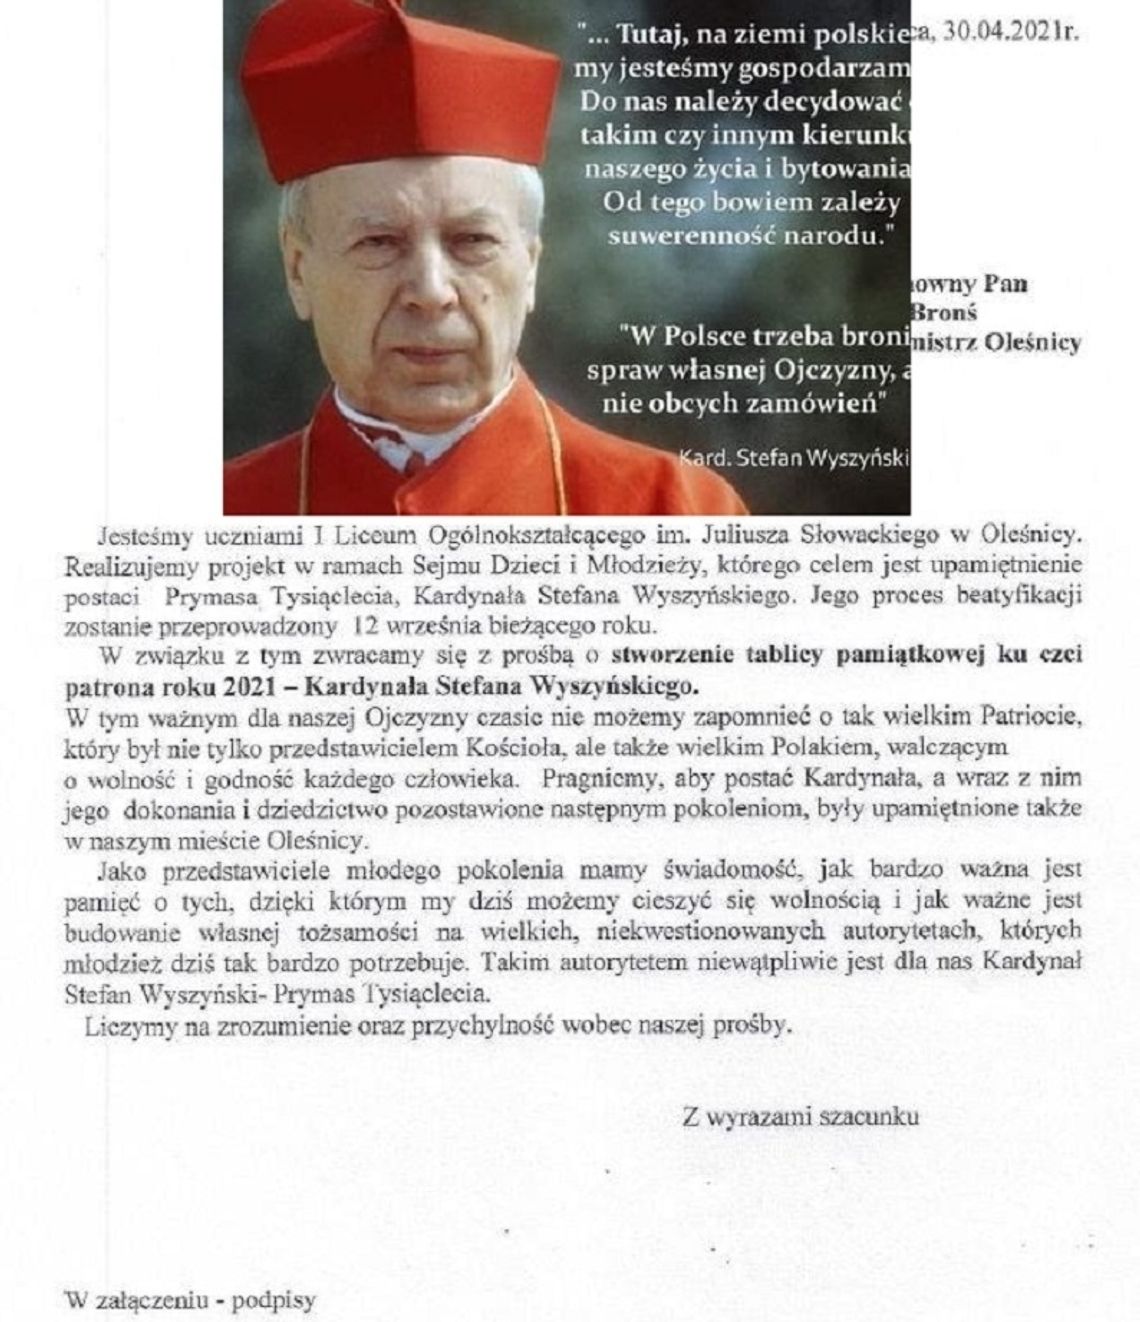 Uczniowie I LO w Oleśnicy z petycją w sprawie uhonorowania kardynała Wyszyńskiego 